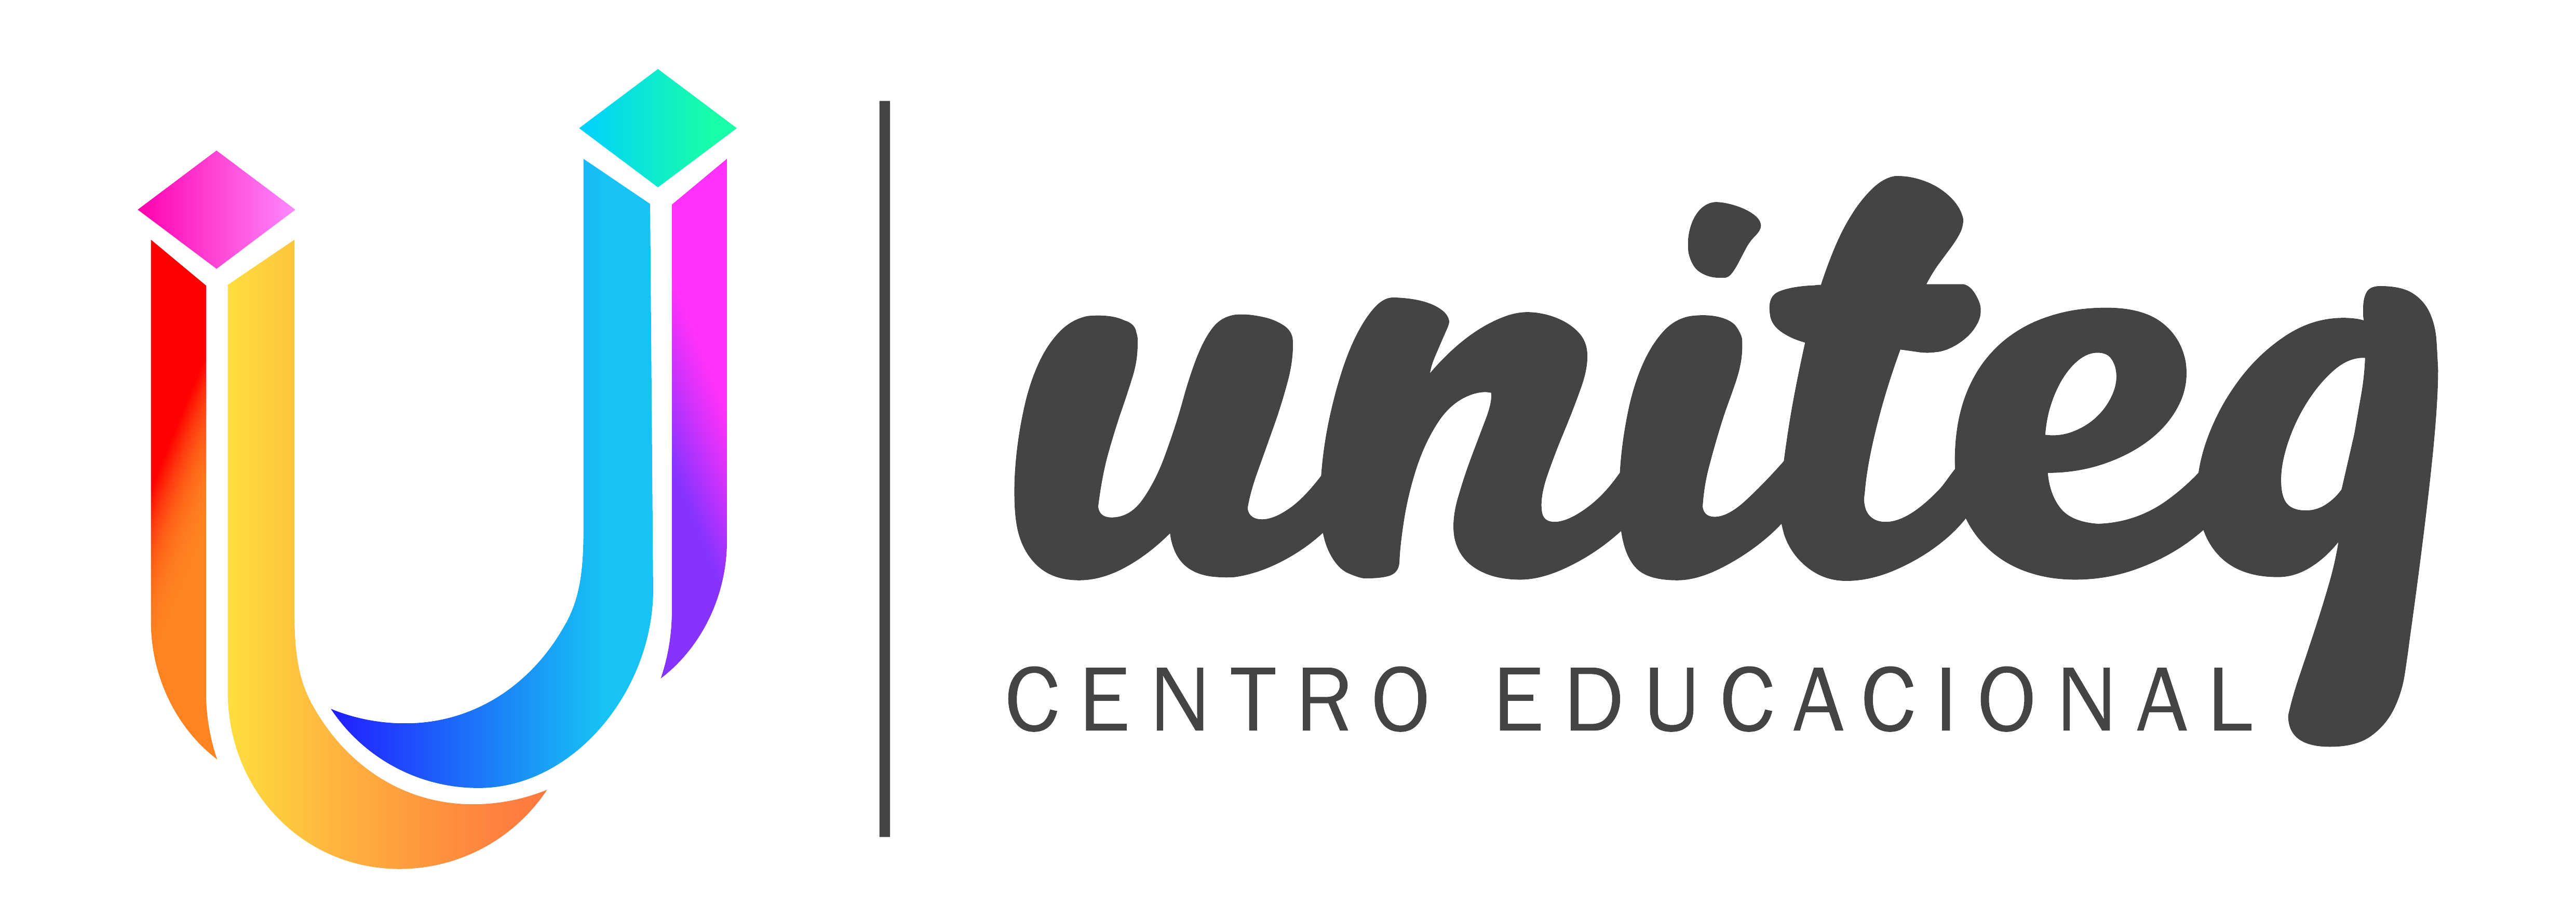 Uniteq Centro Educacional